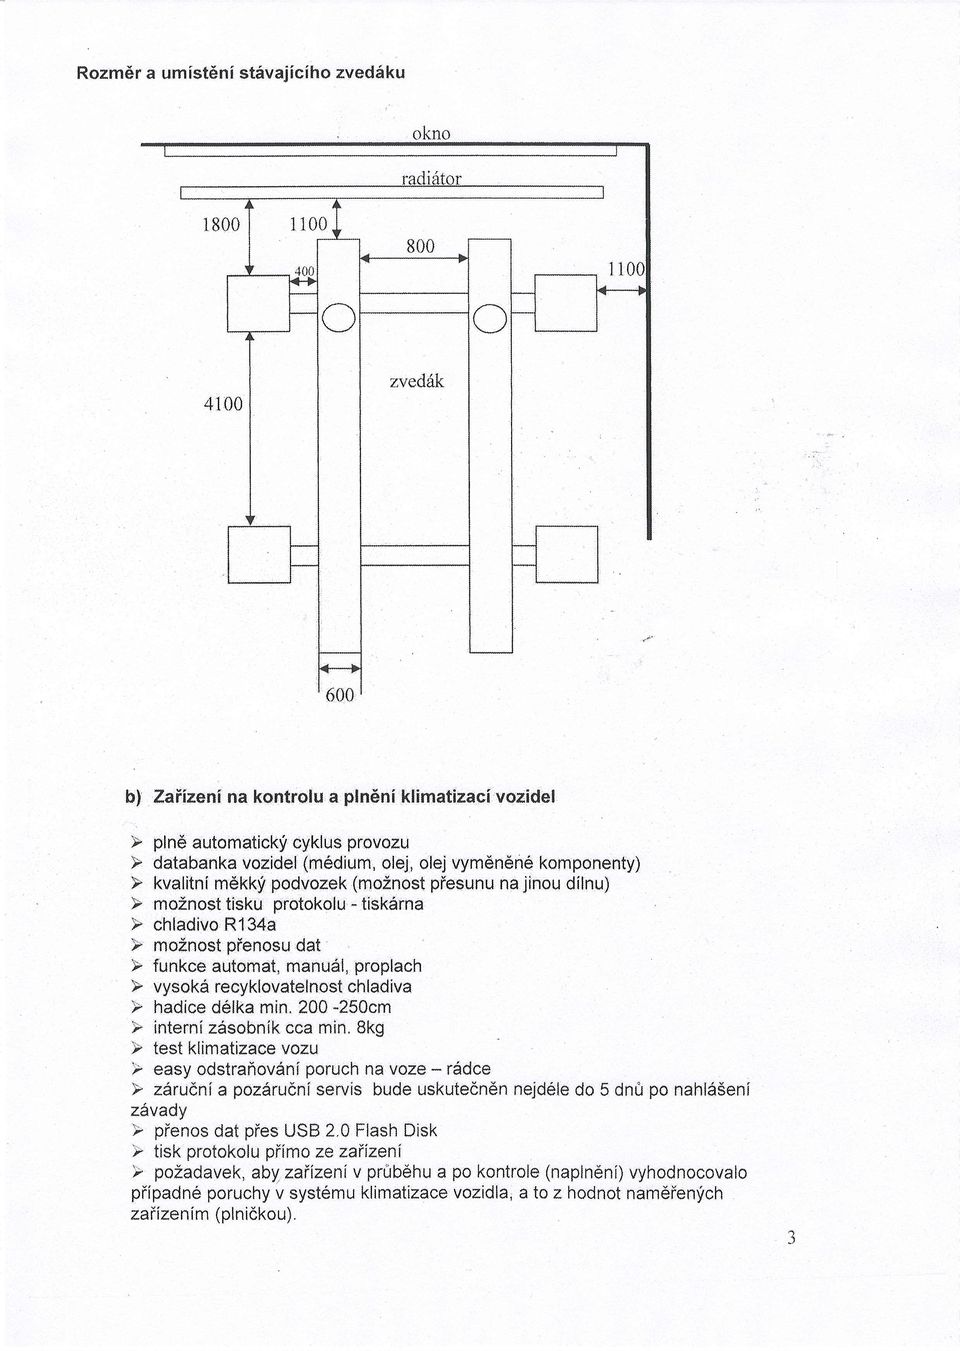 funkce automat, manu*l, proplach ) vysoki recyklovatelnost chladiva P hadice ddlka min. 200-250cm F internizdsobnik cca min.